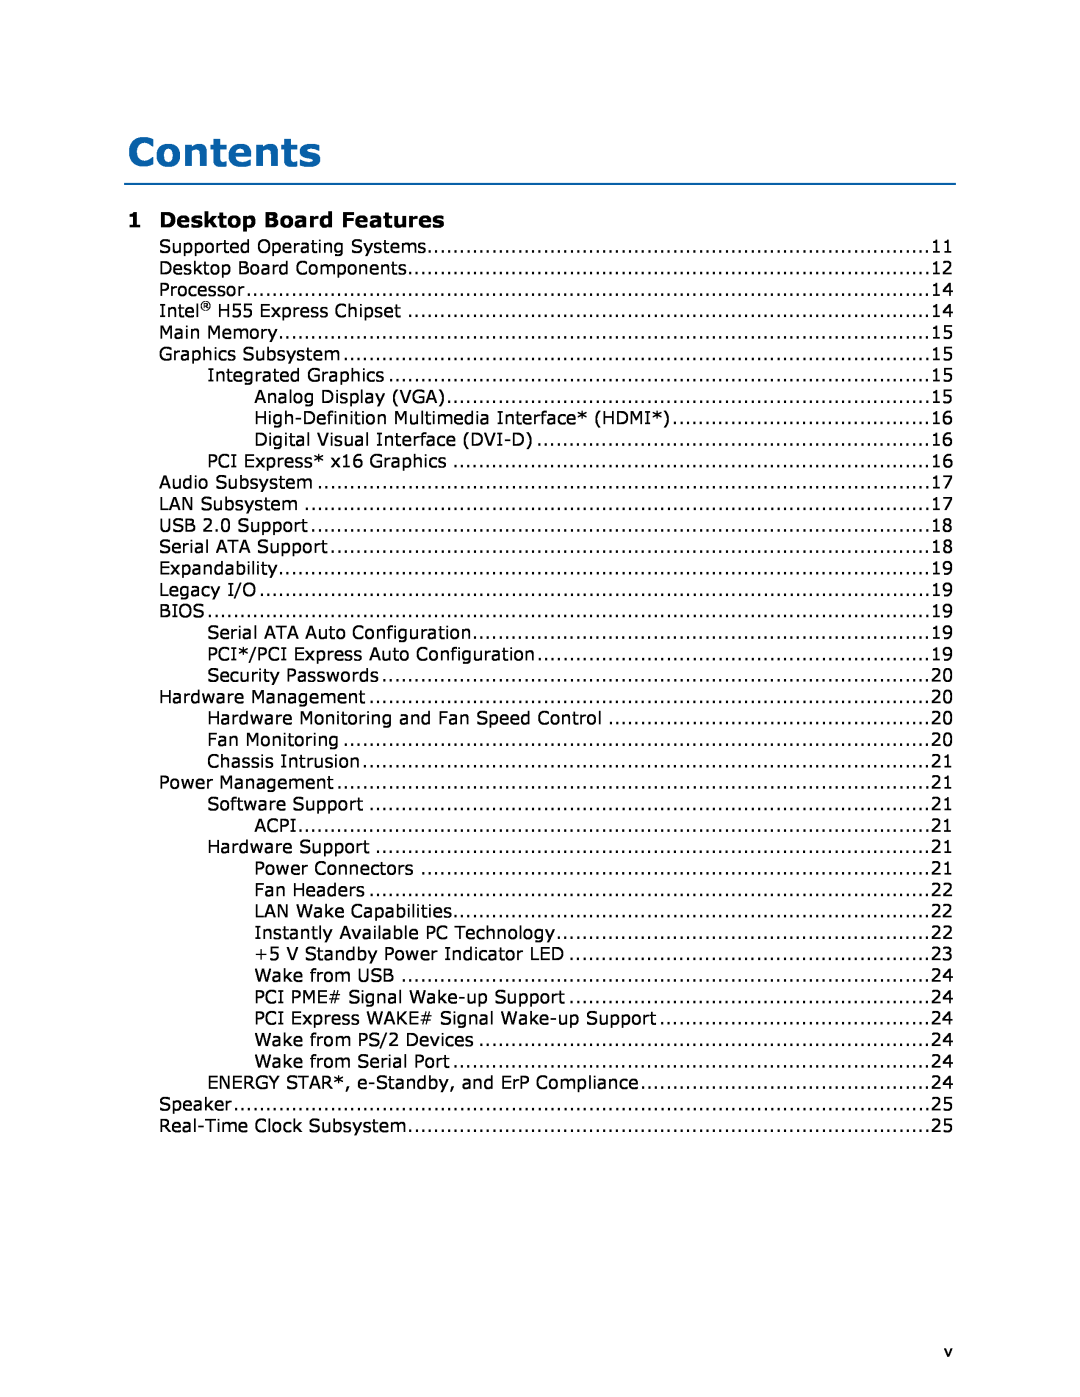 Intel BOXDH55HC manual Contents, Desktop Board Features 